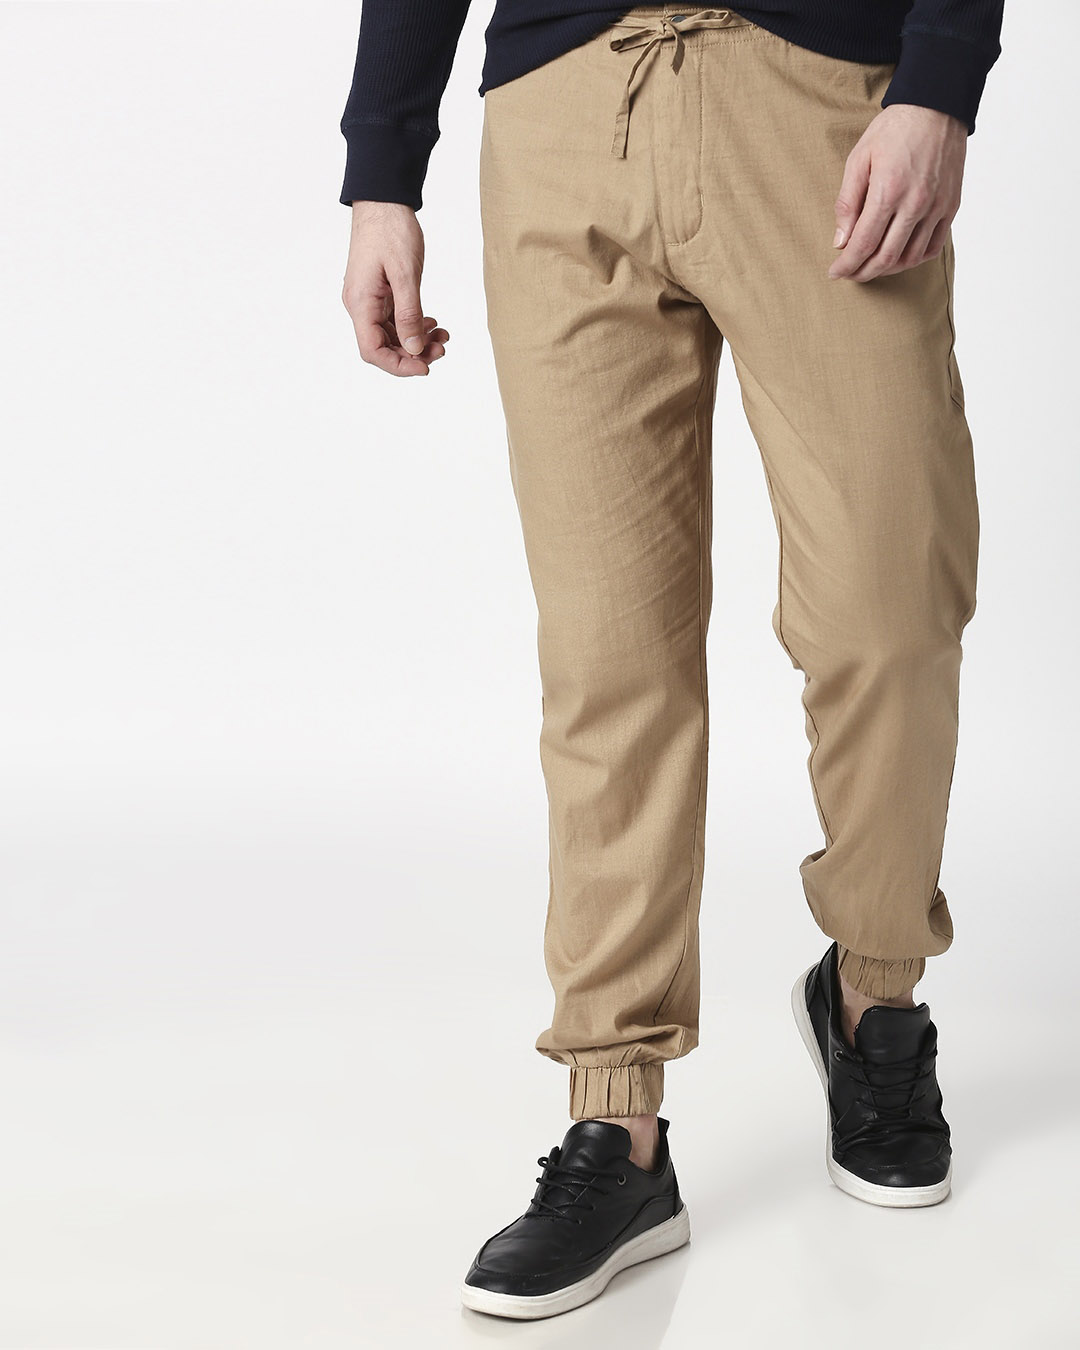 Buy Desert Beige Cotton Jogger Pants for Men Online at Bewakoof